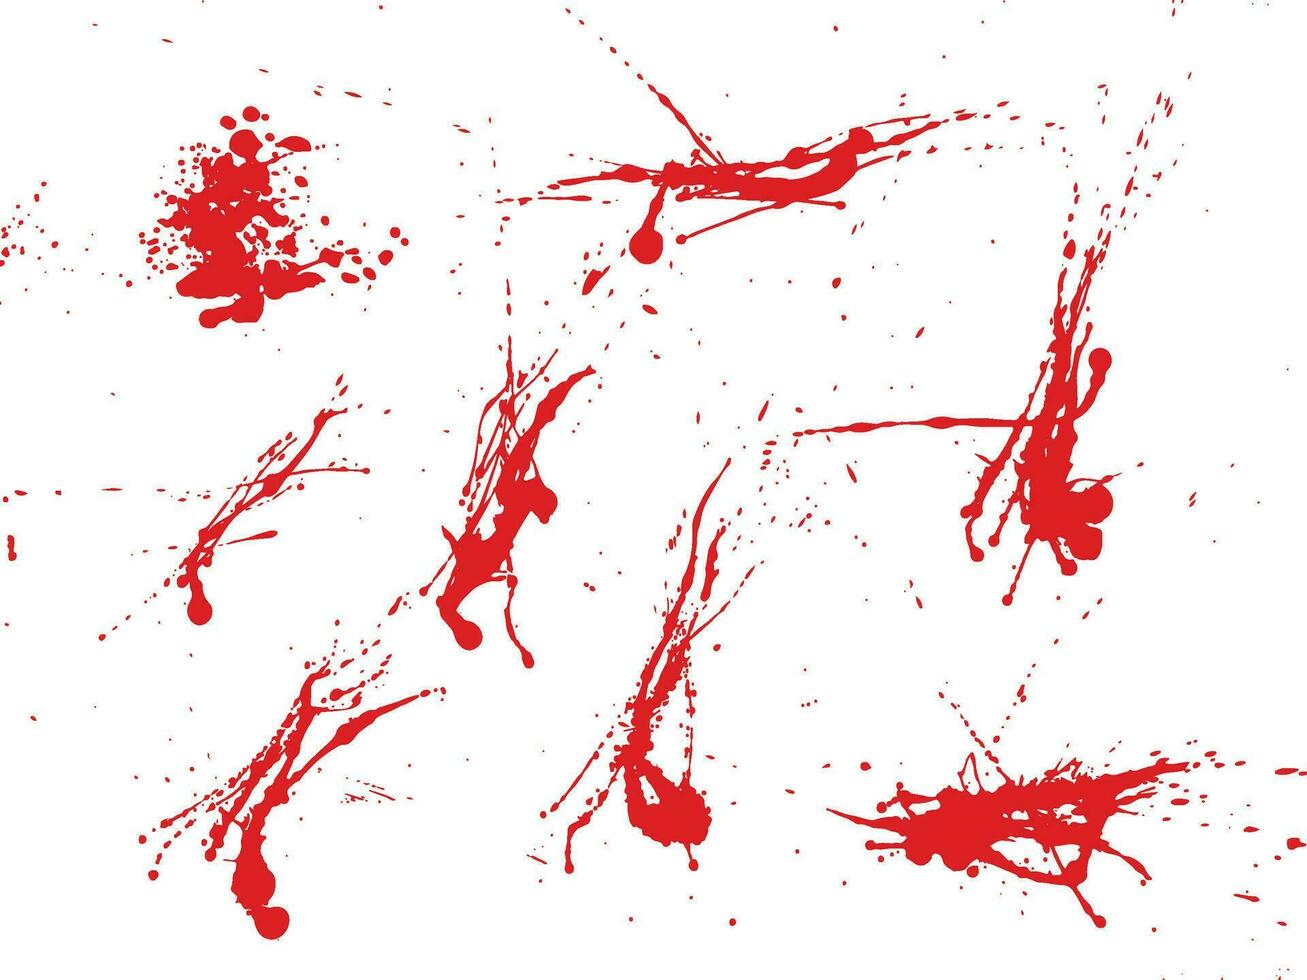 Bloodstain grunge texture blood splash background set vector